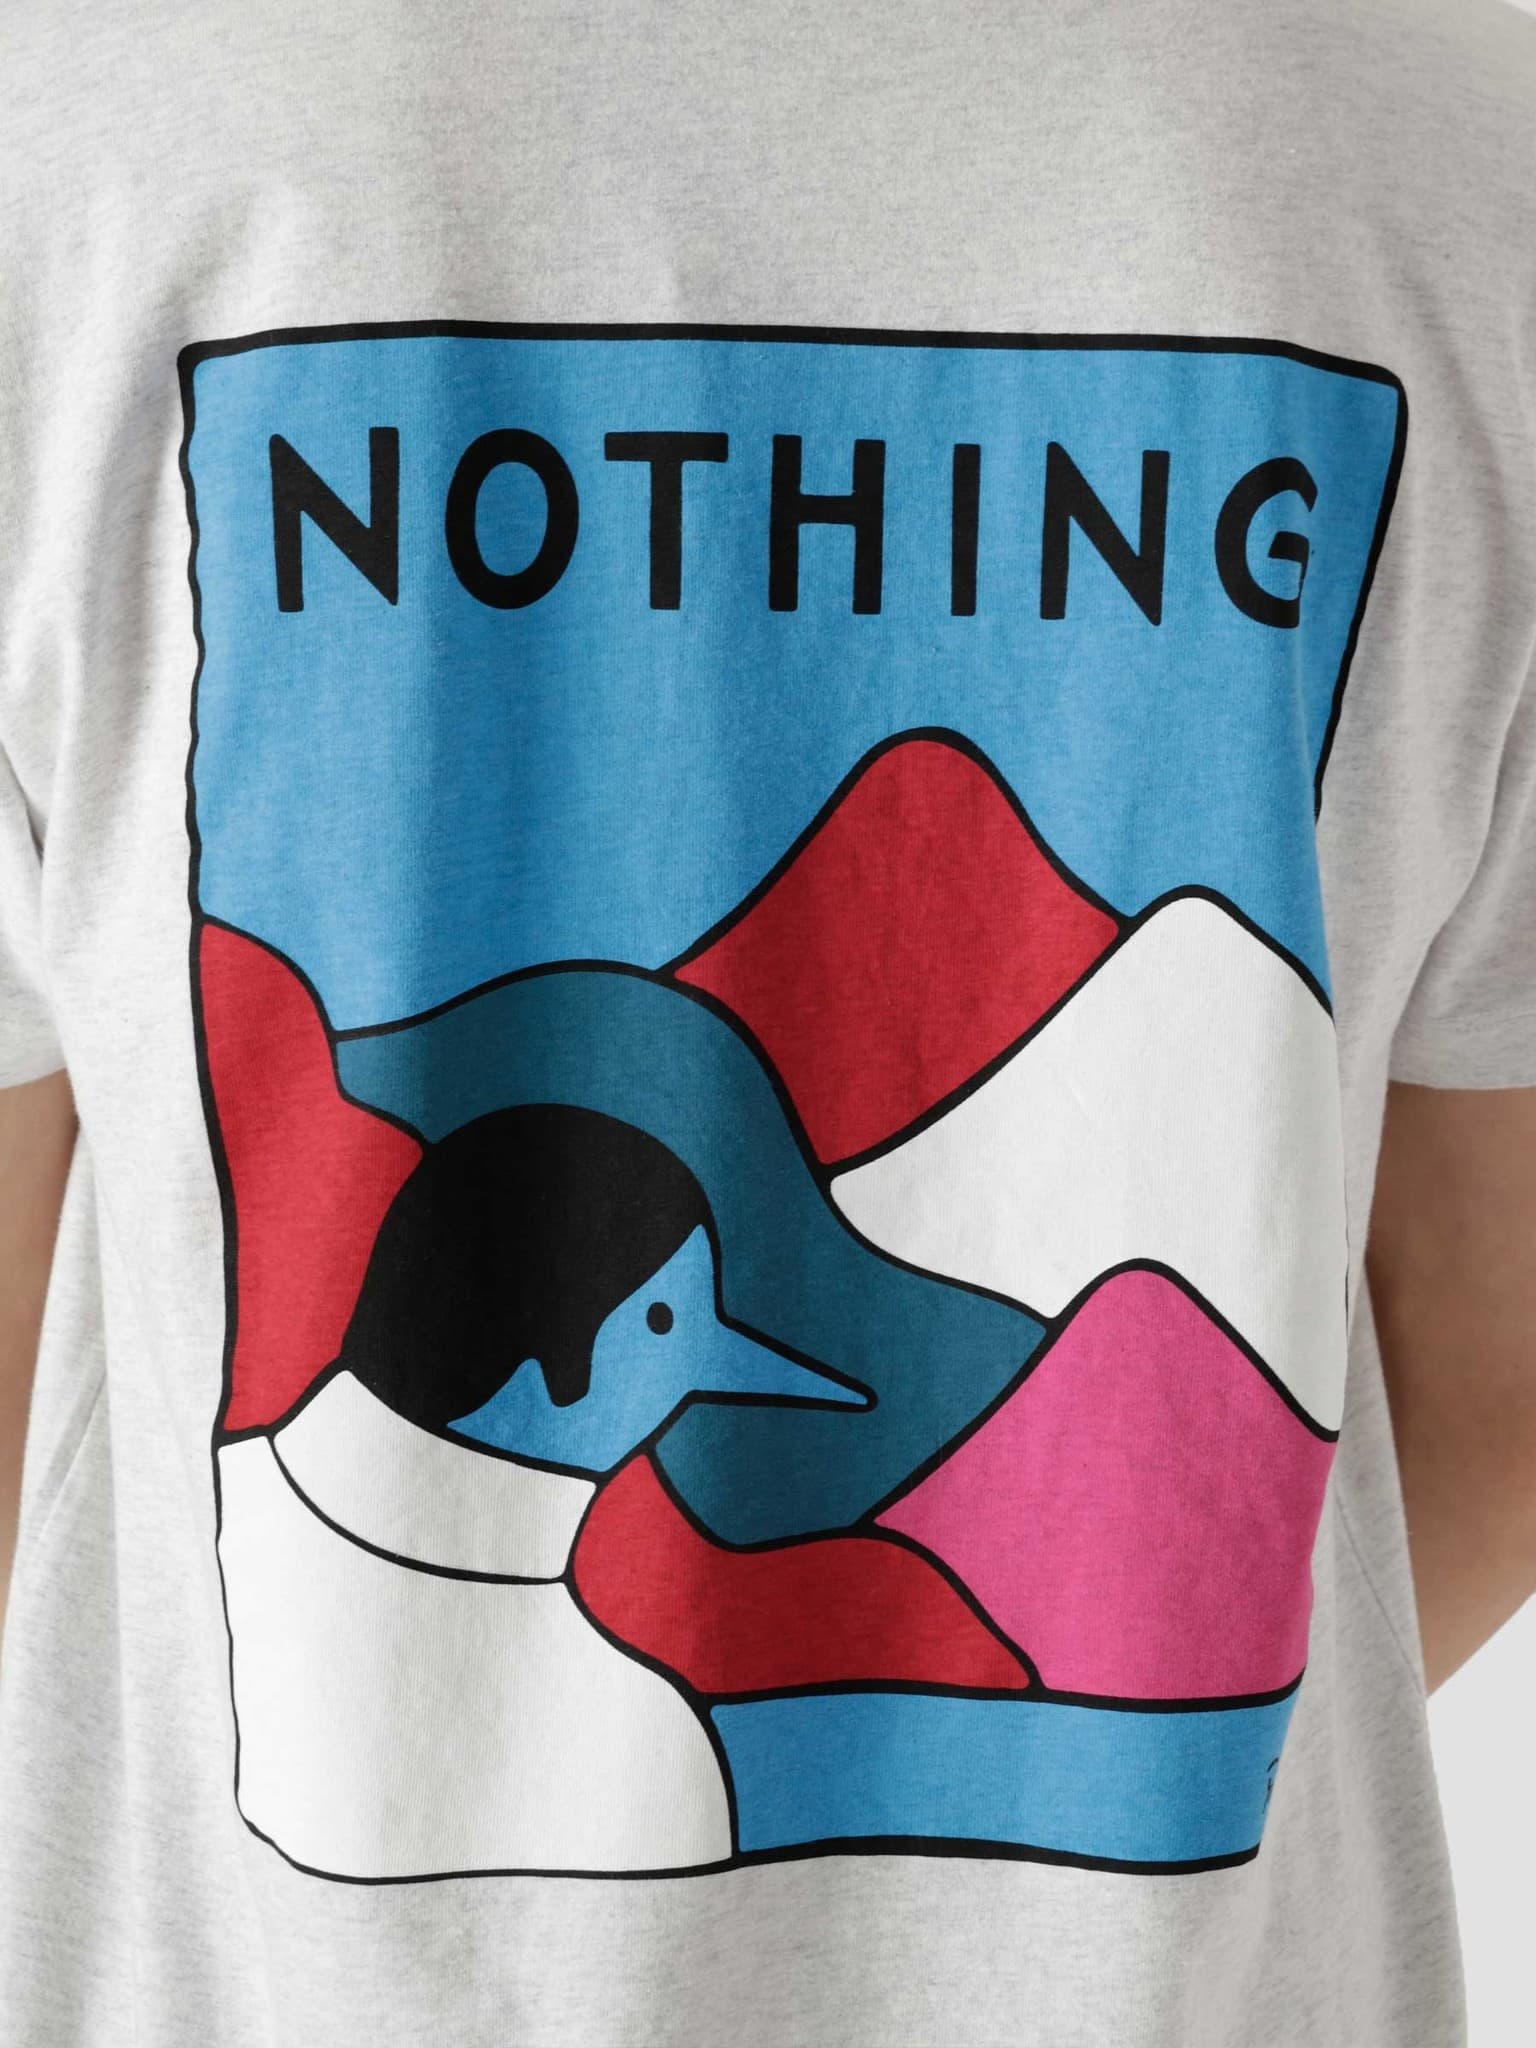 Nothing T-Shirt Ash Grey 45470